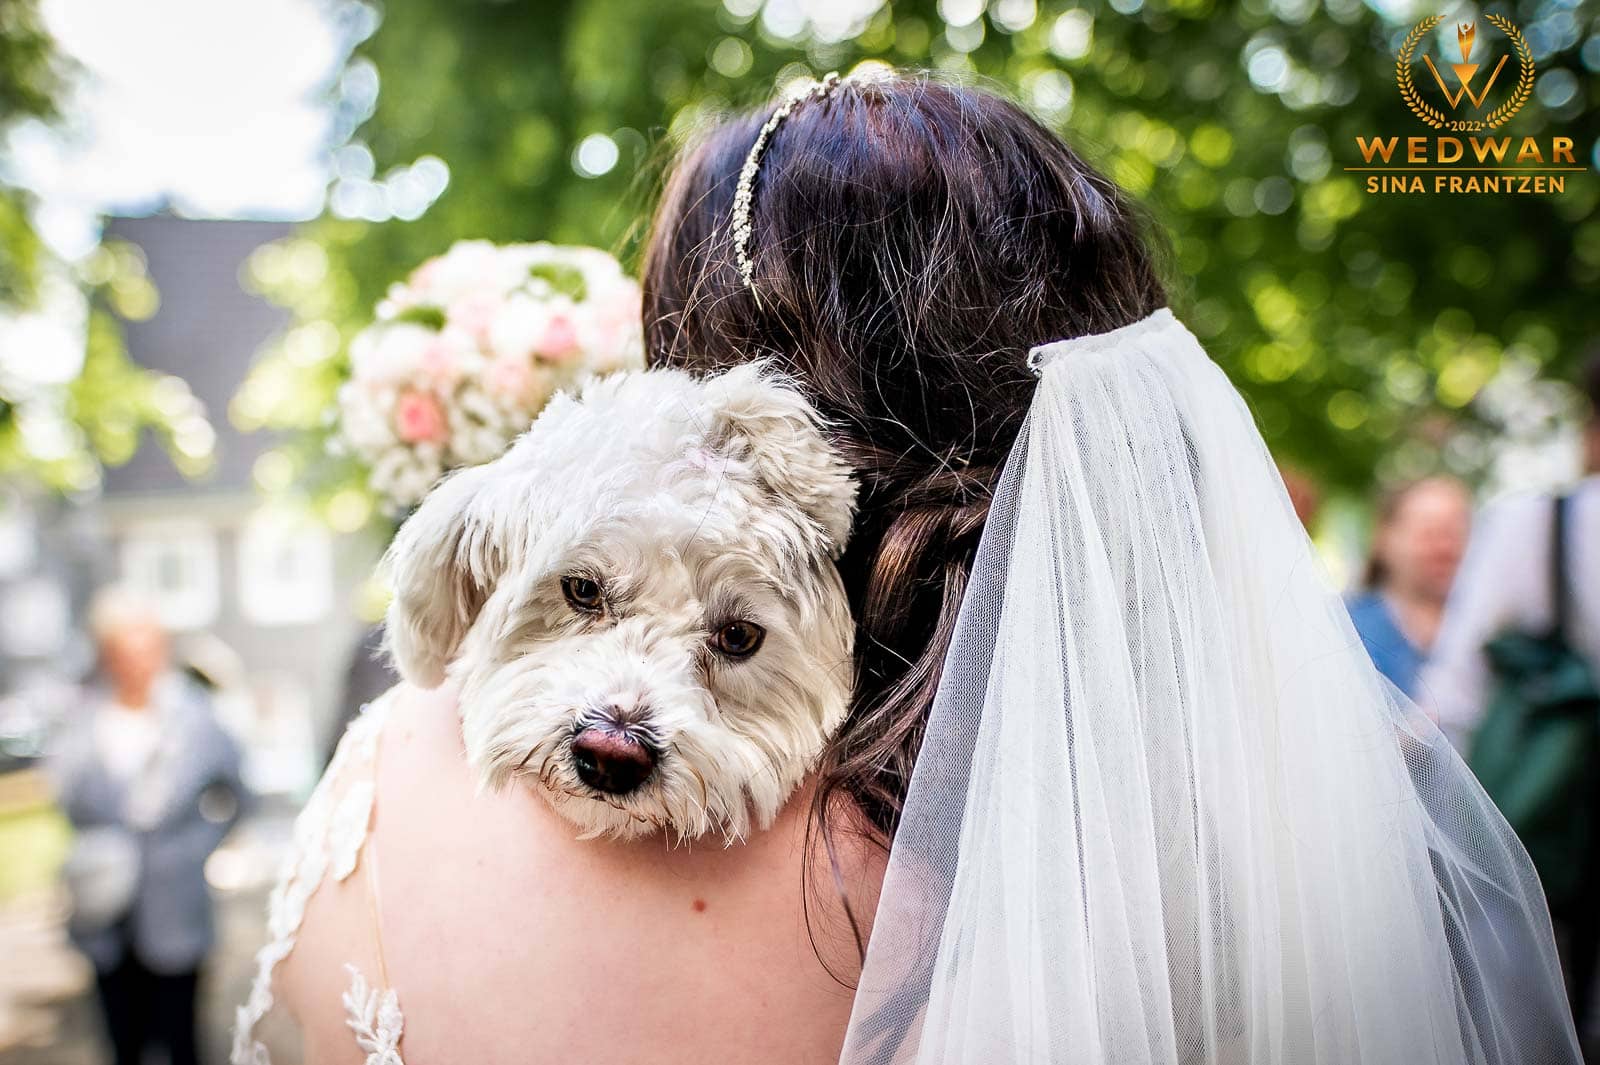 Tierische Gratulation bei einer Hochzeit. Hochzeitsfotografin Sina Frantzen bildsprache. Gewinnerbild Wedwar Awards